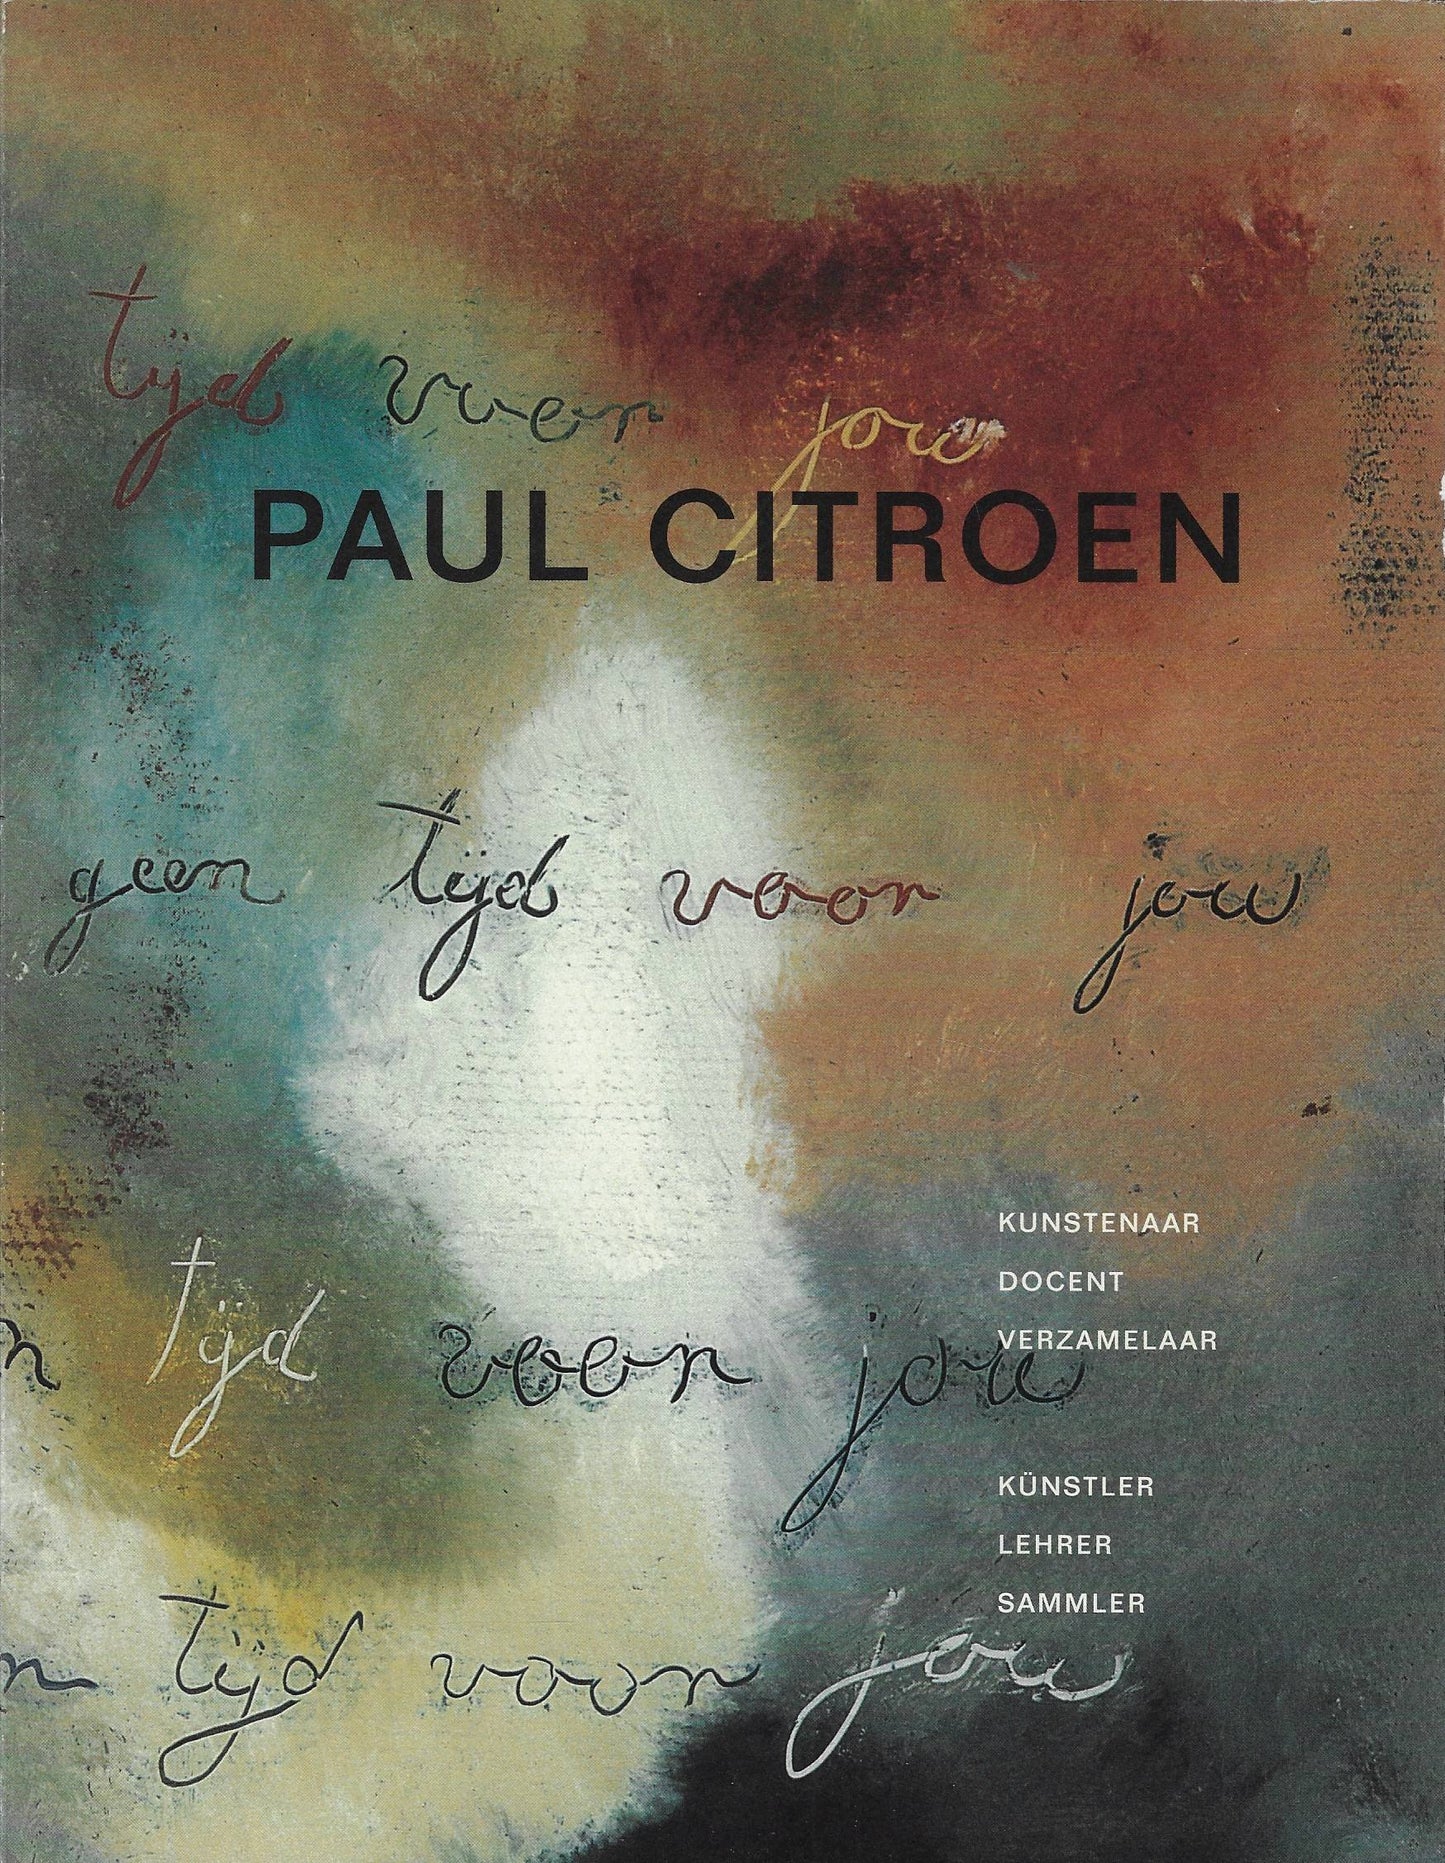 Paul Citroen Paul Citroen / kunstenaar, docent, verzamelaar Kunstler, Lehrer, Sammler